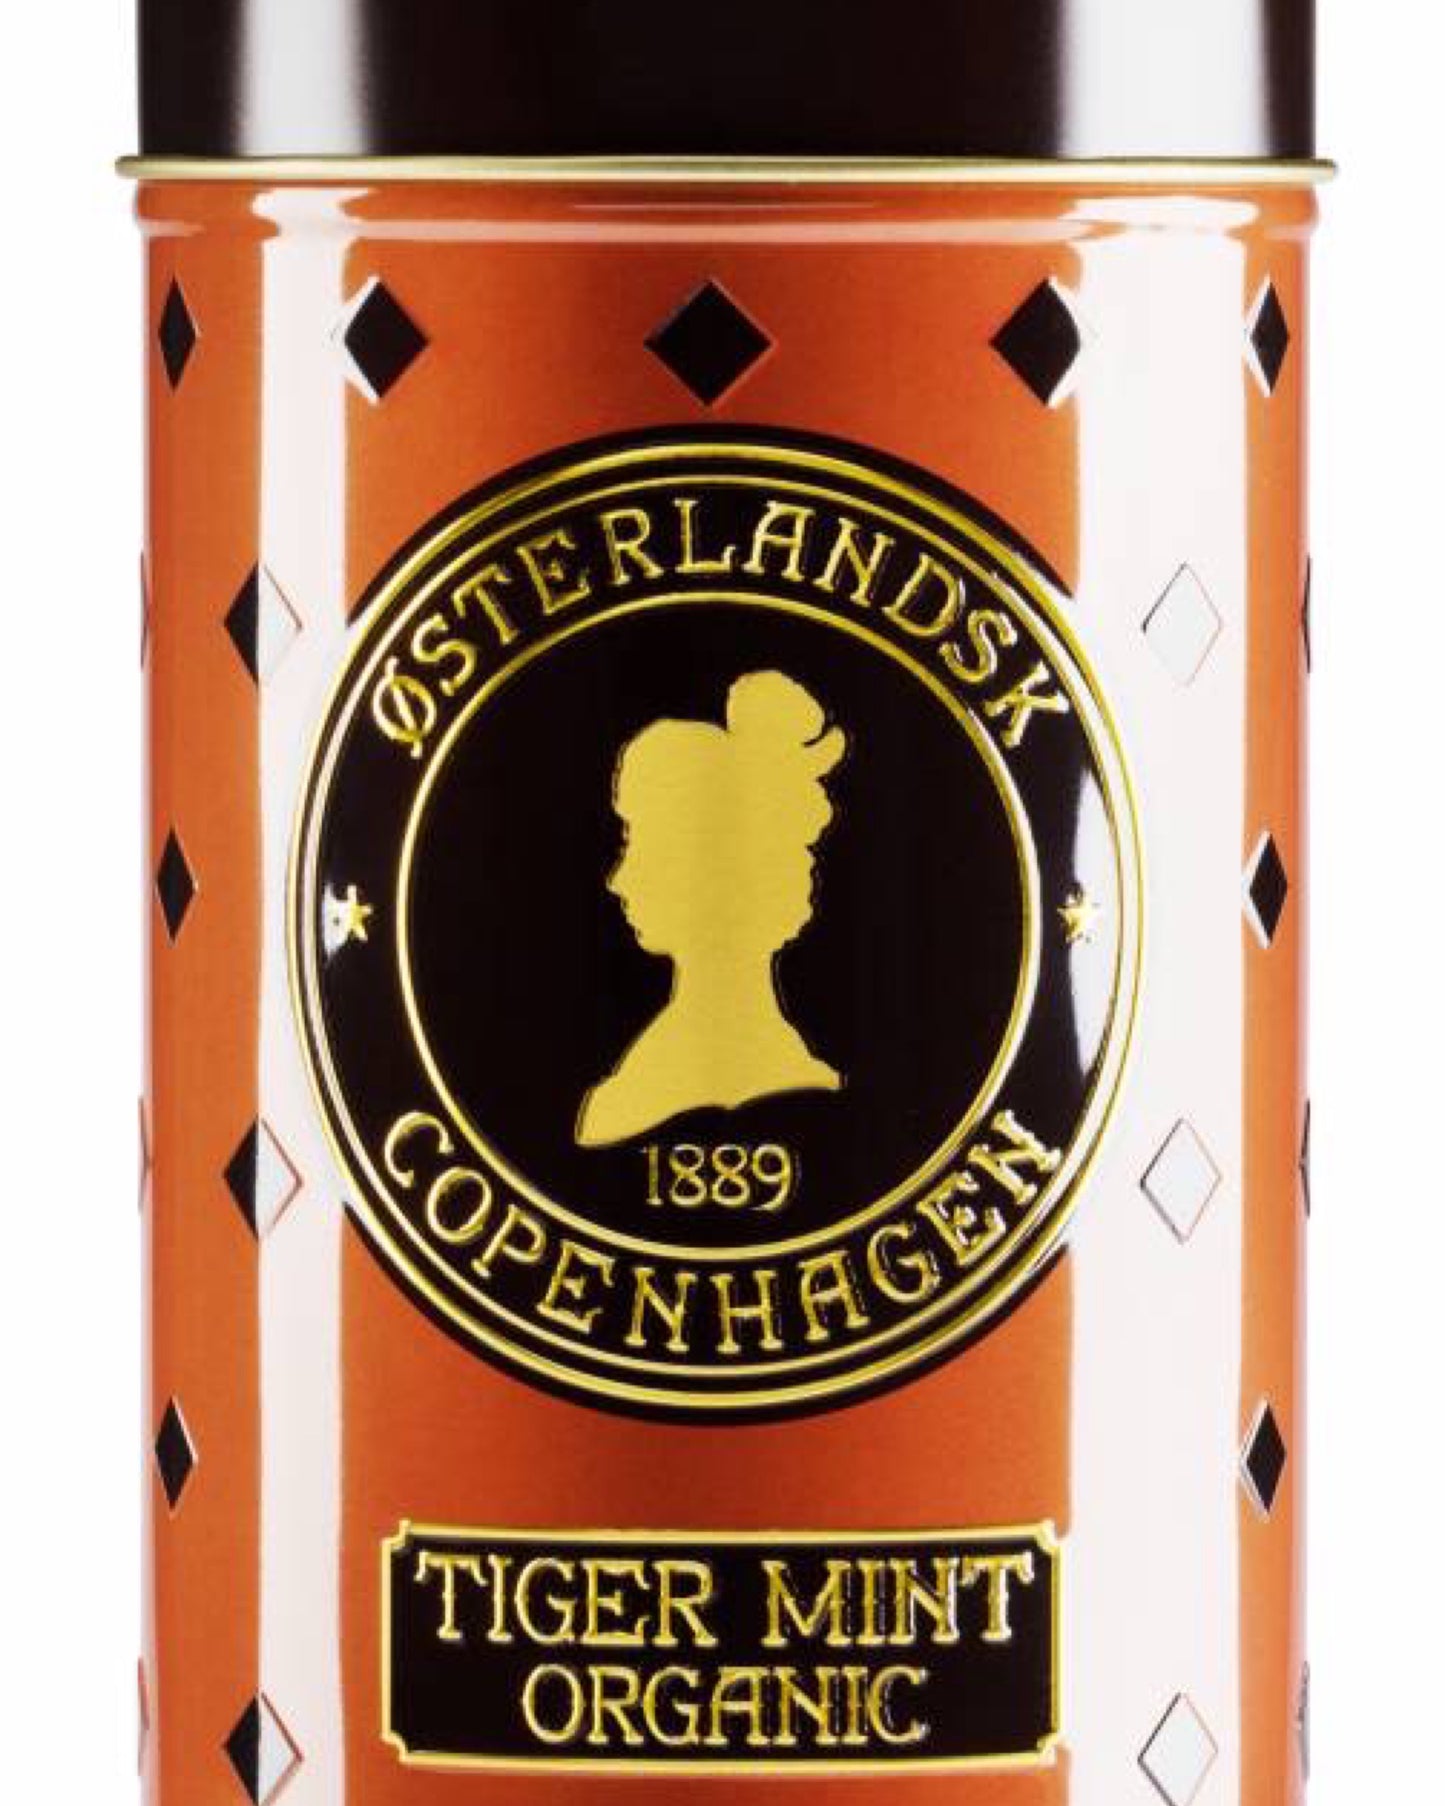 Tiger Mint